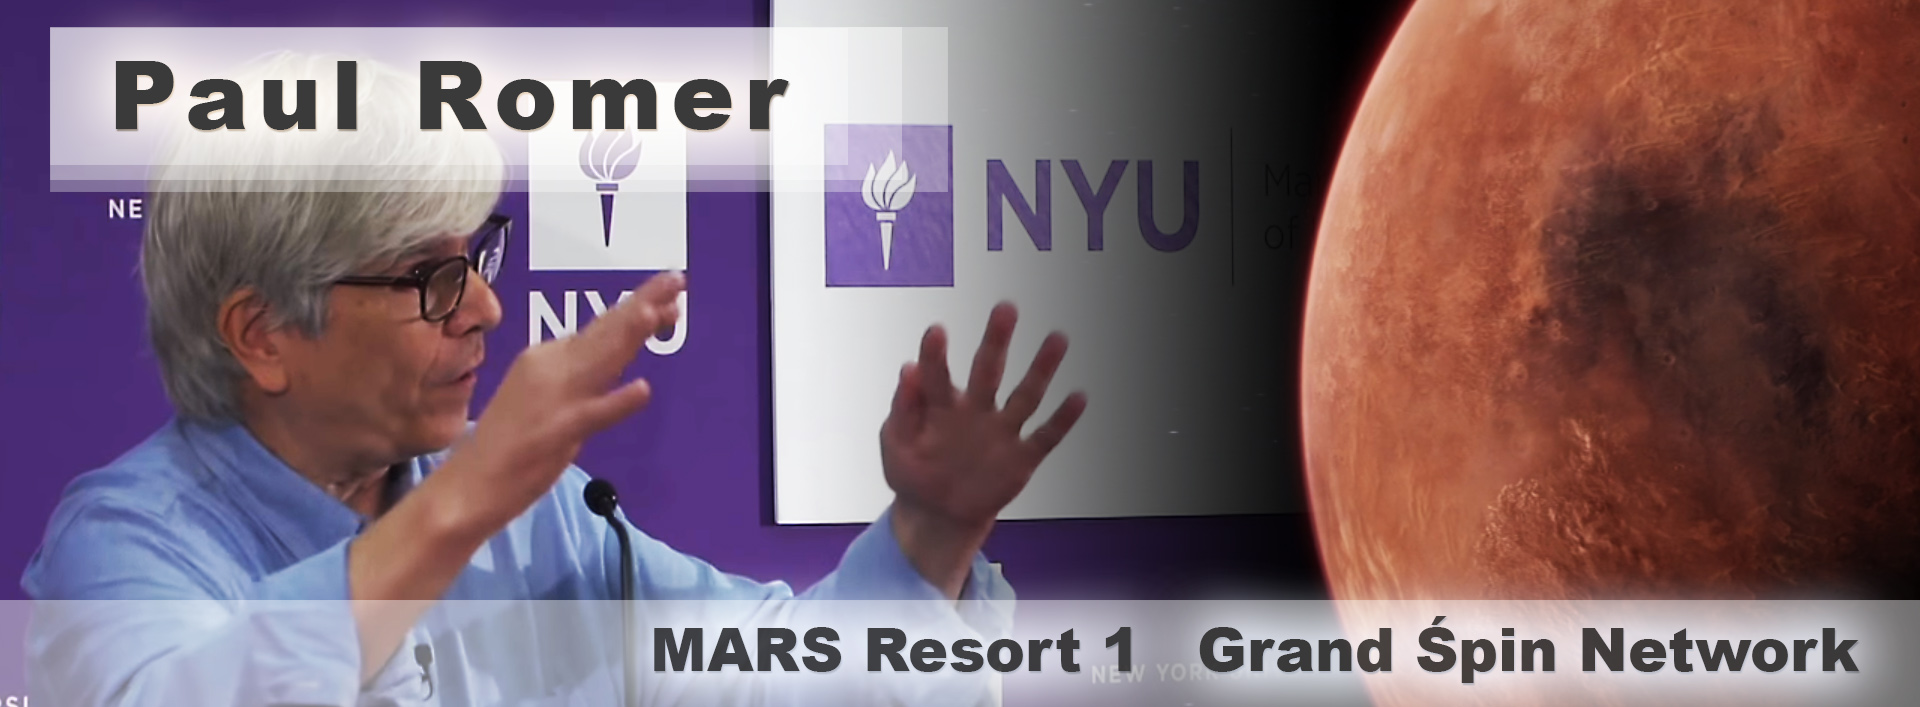 Paul-Romer__NYU__MARS-RESORT-1__Grand-Śpin-Network